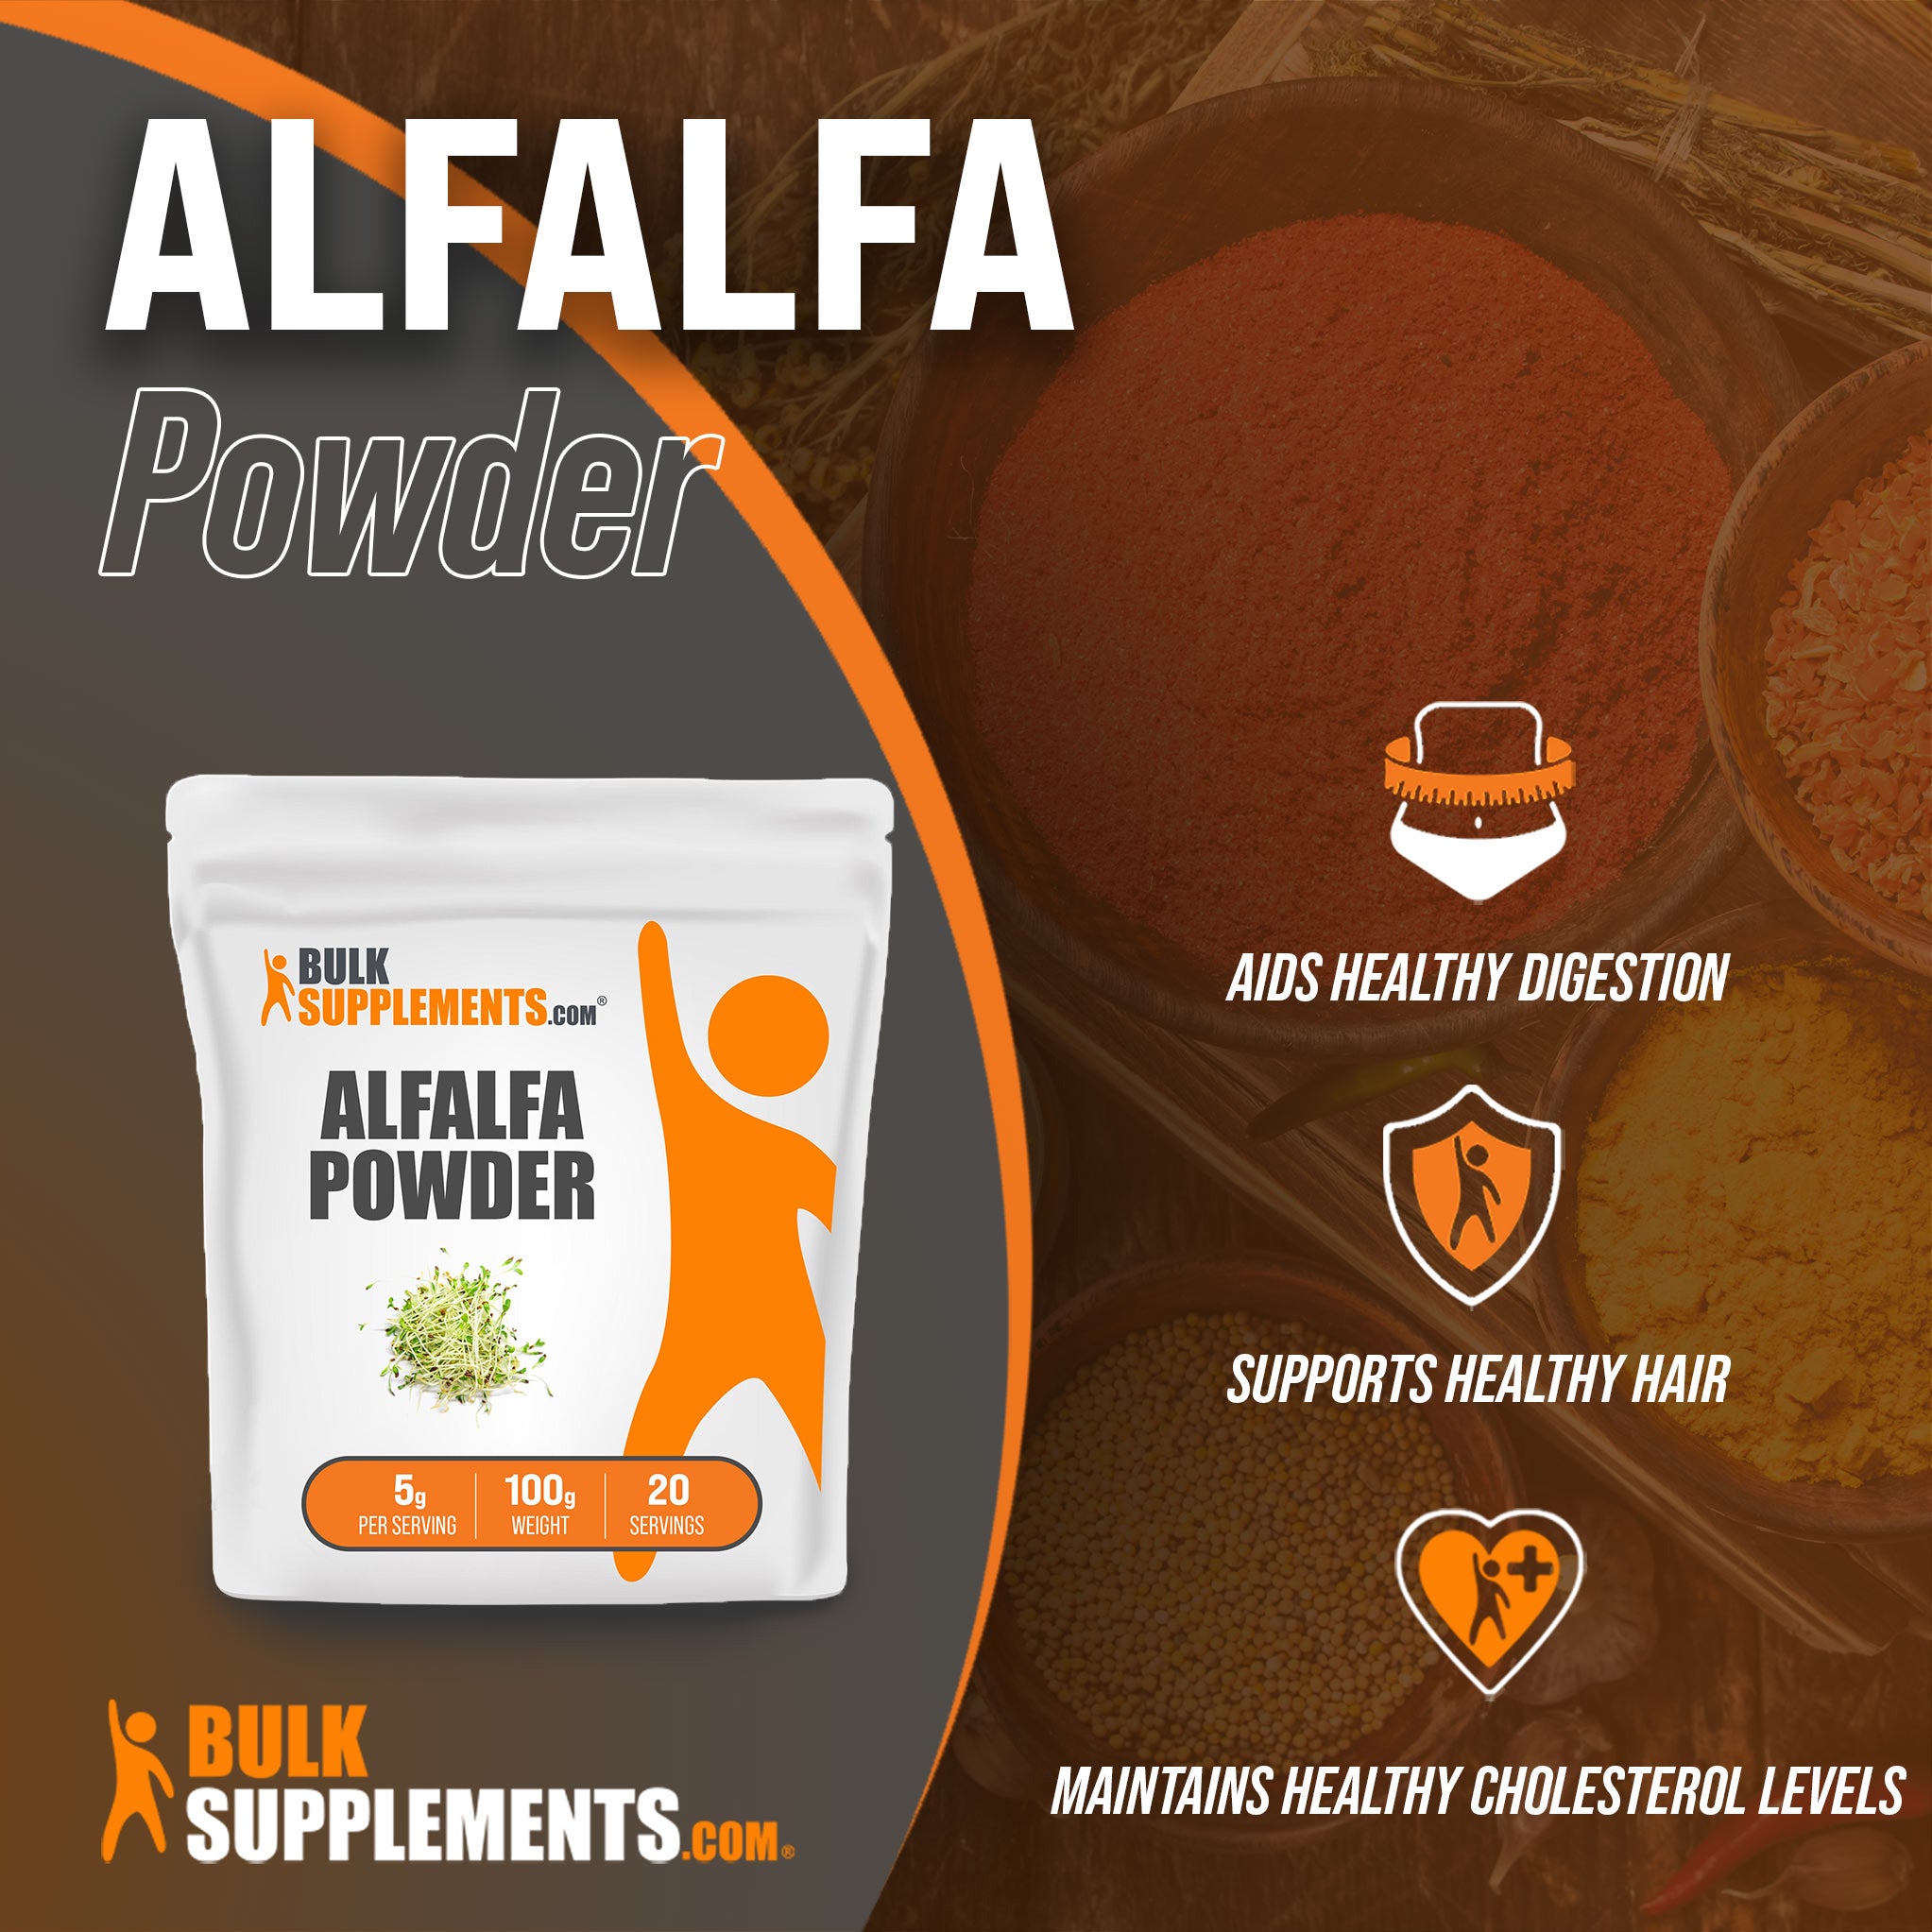 Alfalfa Powder for Healthy Cholesterol Levels